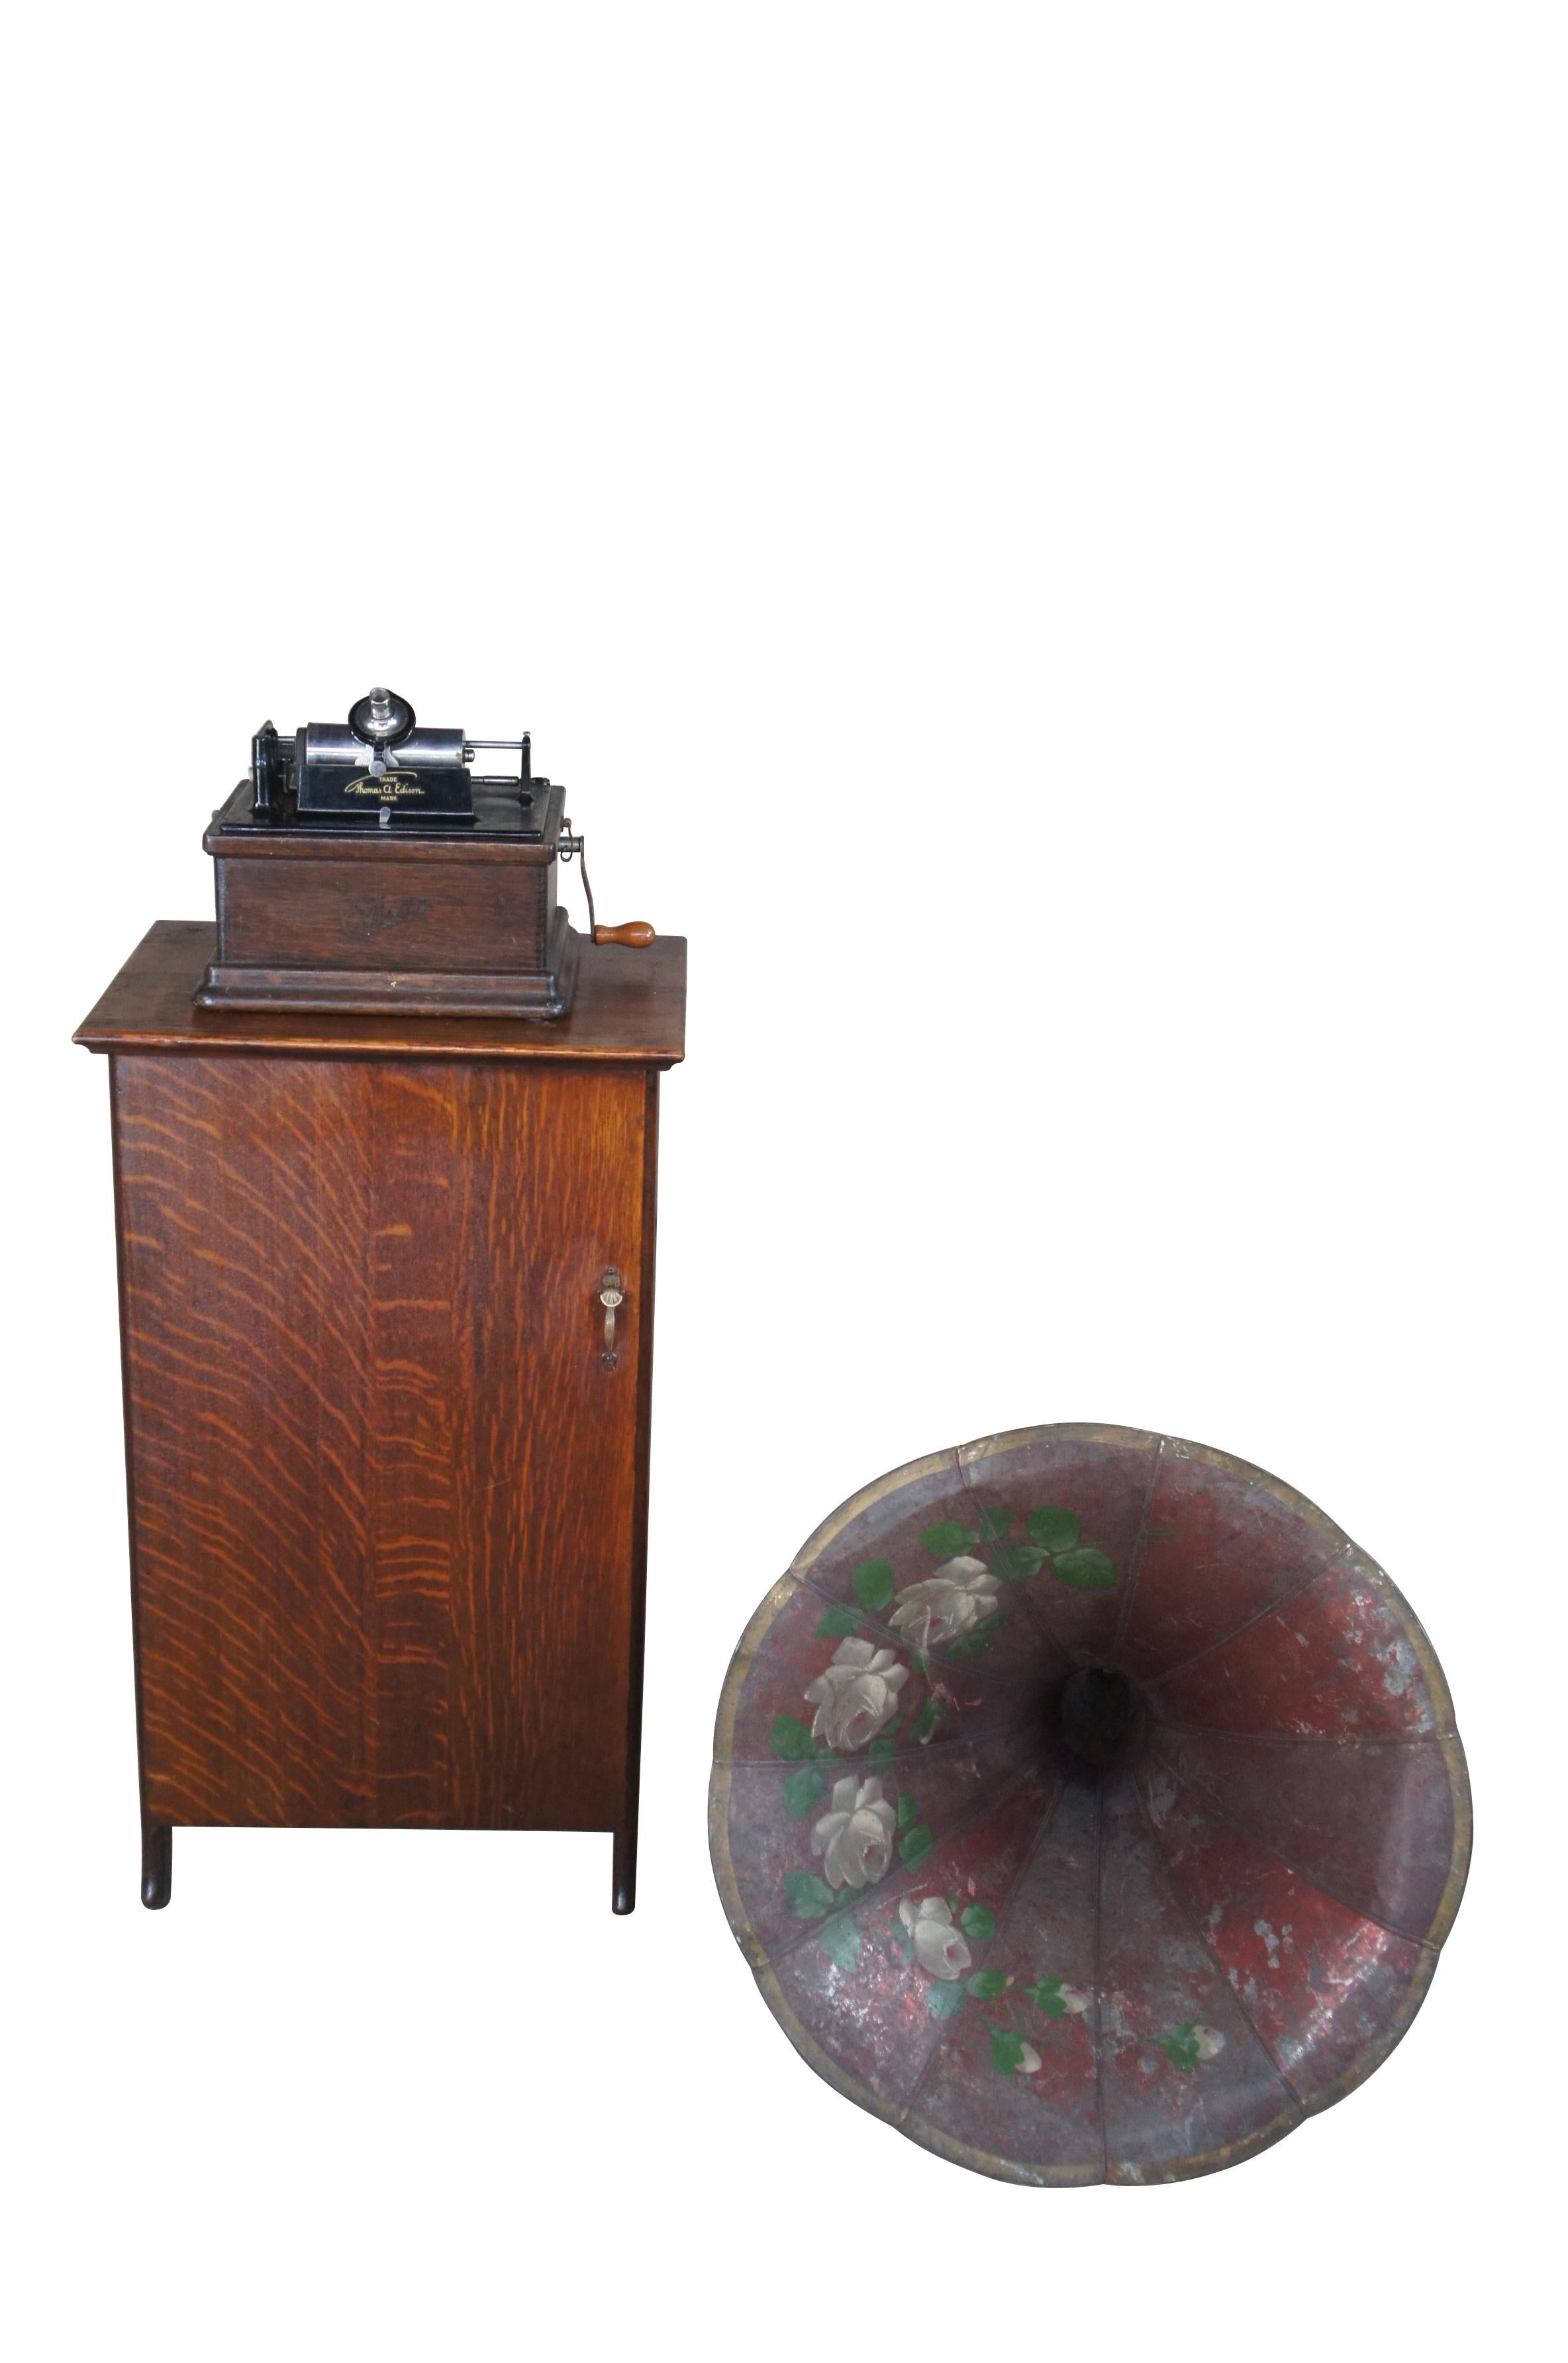 Un exceptionnel phonographe à cylindre Thomas Edison modèle A, avec sa corne d'origine, son armoire à tubes et 93 disques.  La boîte et le meuble du phonographe sont fabriqués en chêne à la manière de la fin de l'époque victorienne, avec quelques